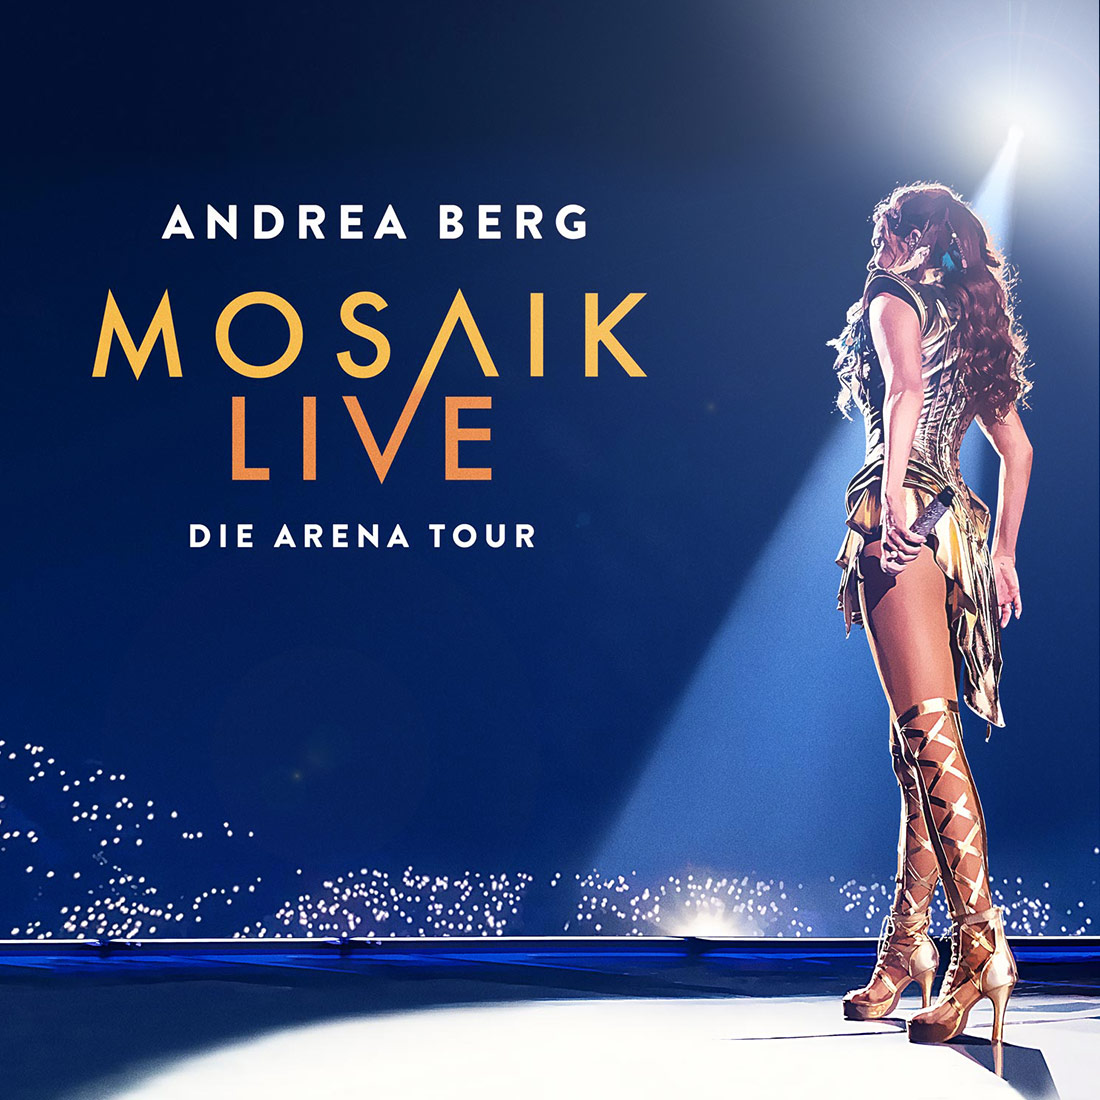 Andrea Berg Mosaik Live Tour